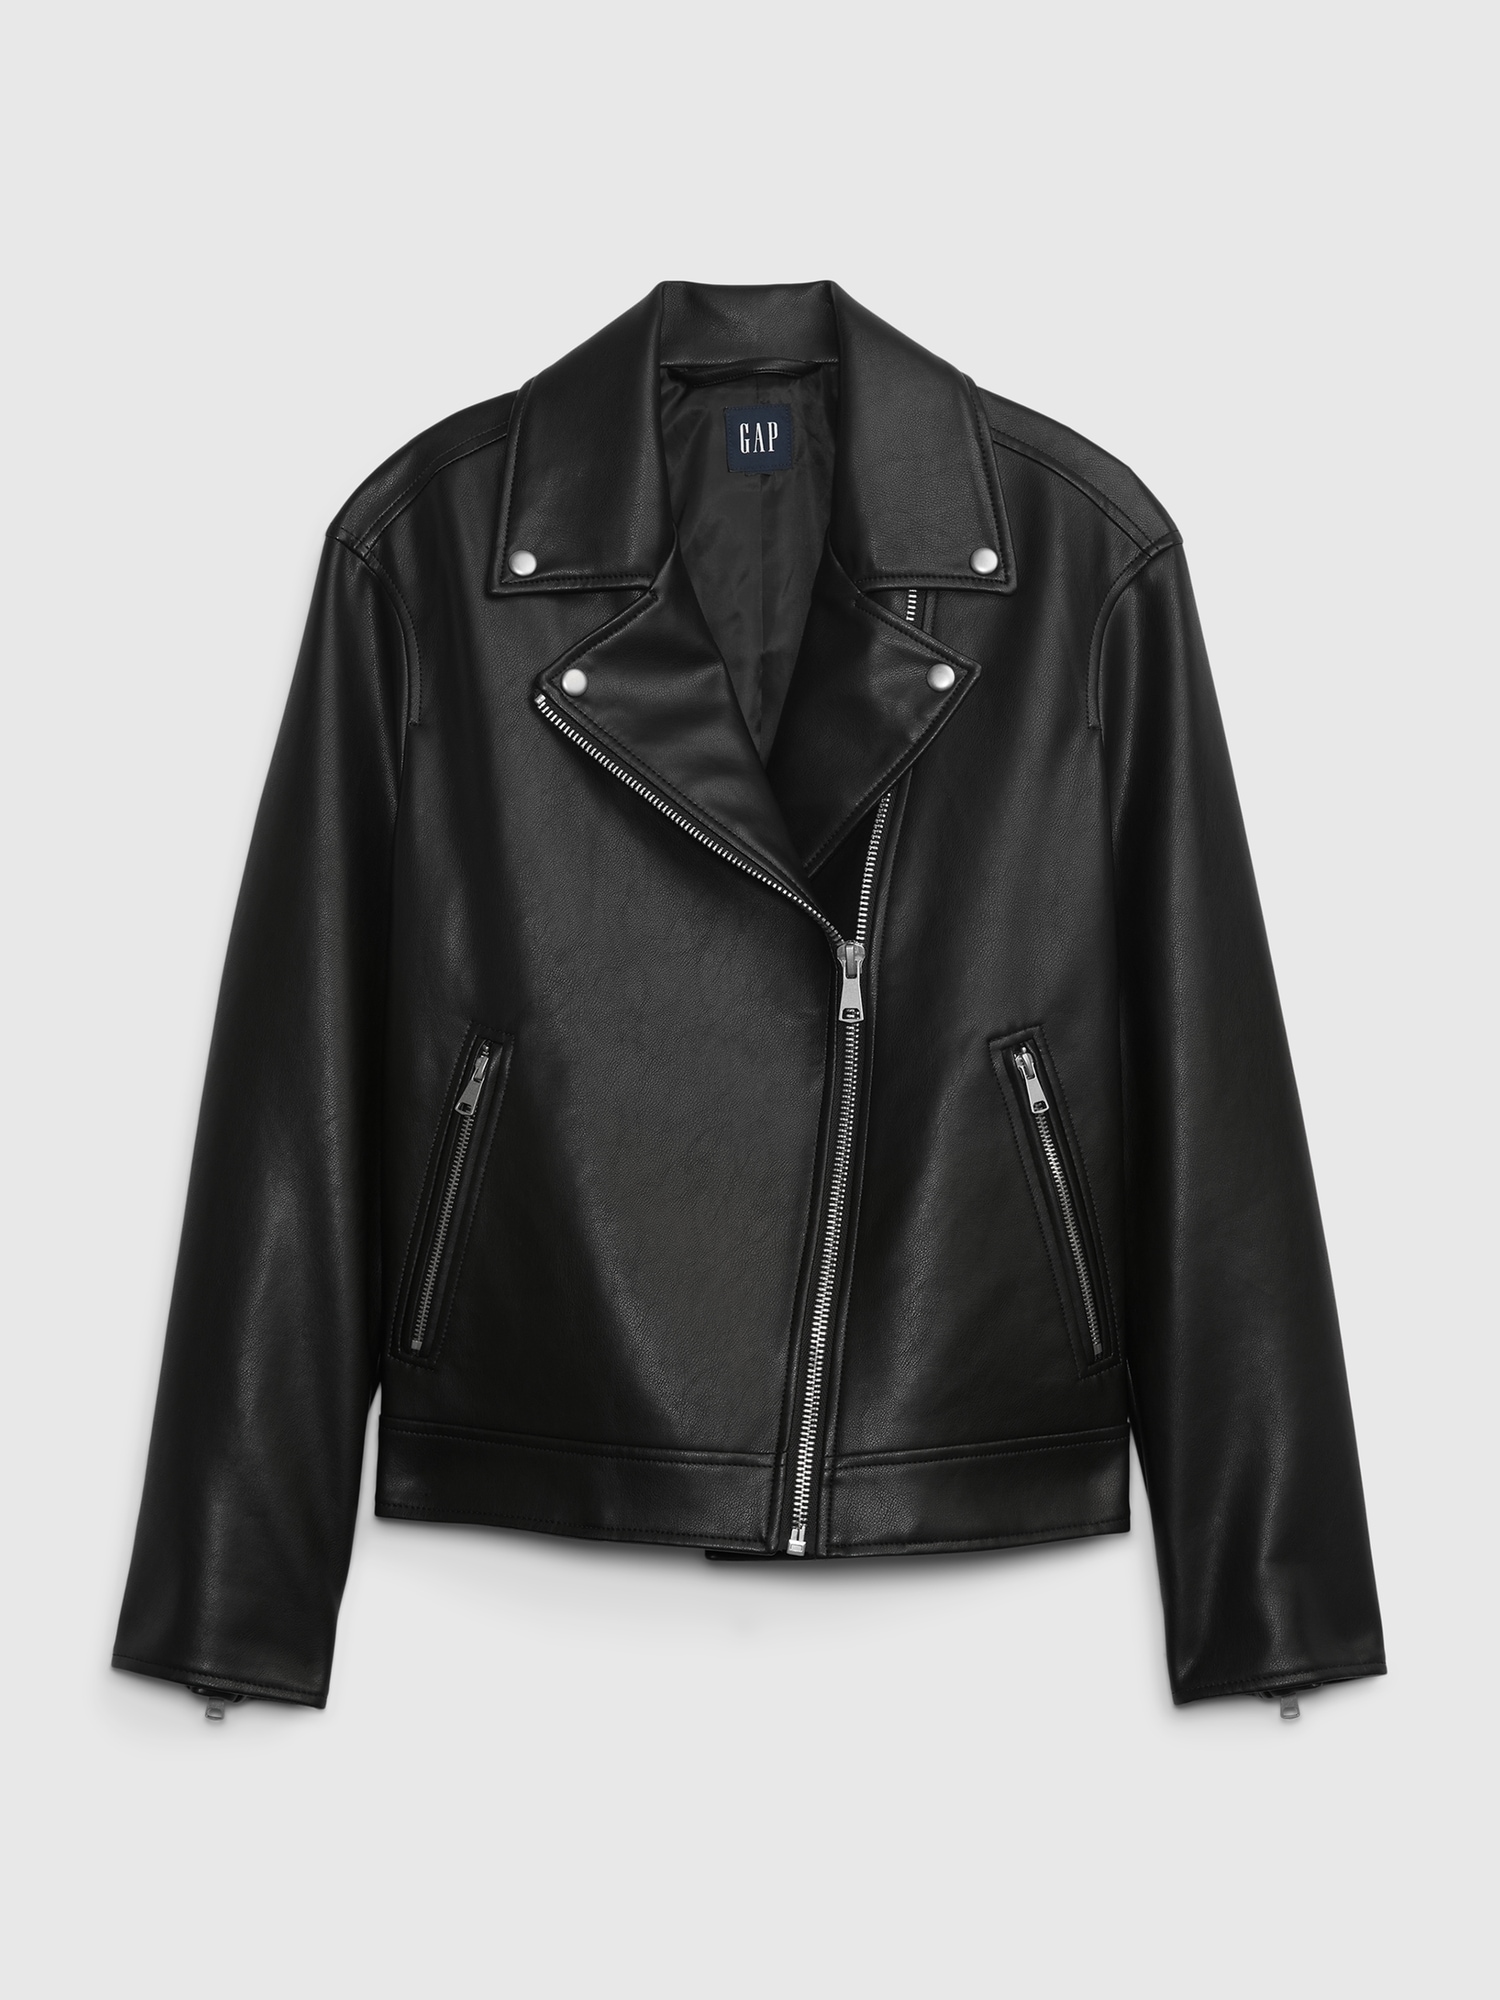 GAP leather jacket